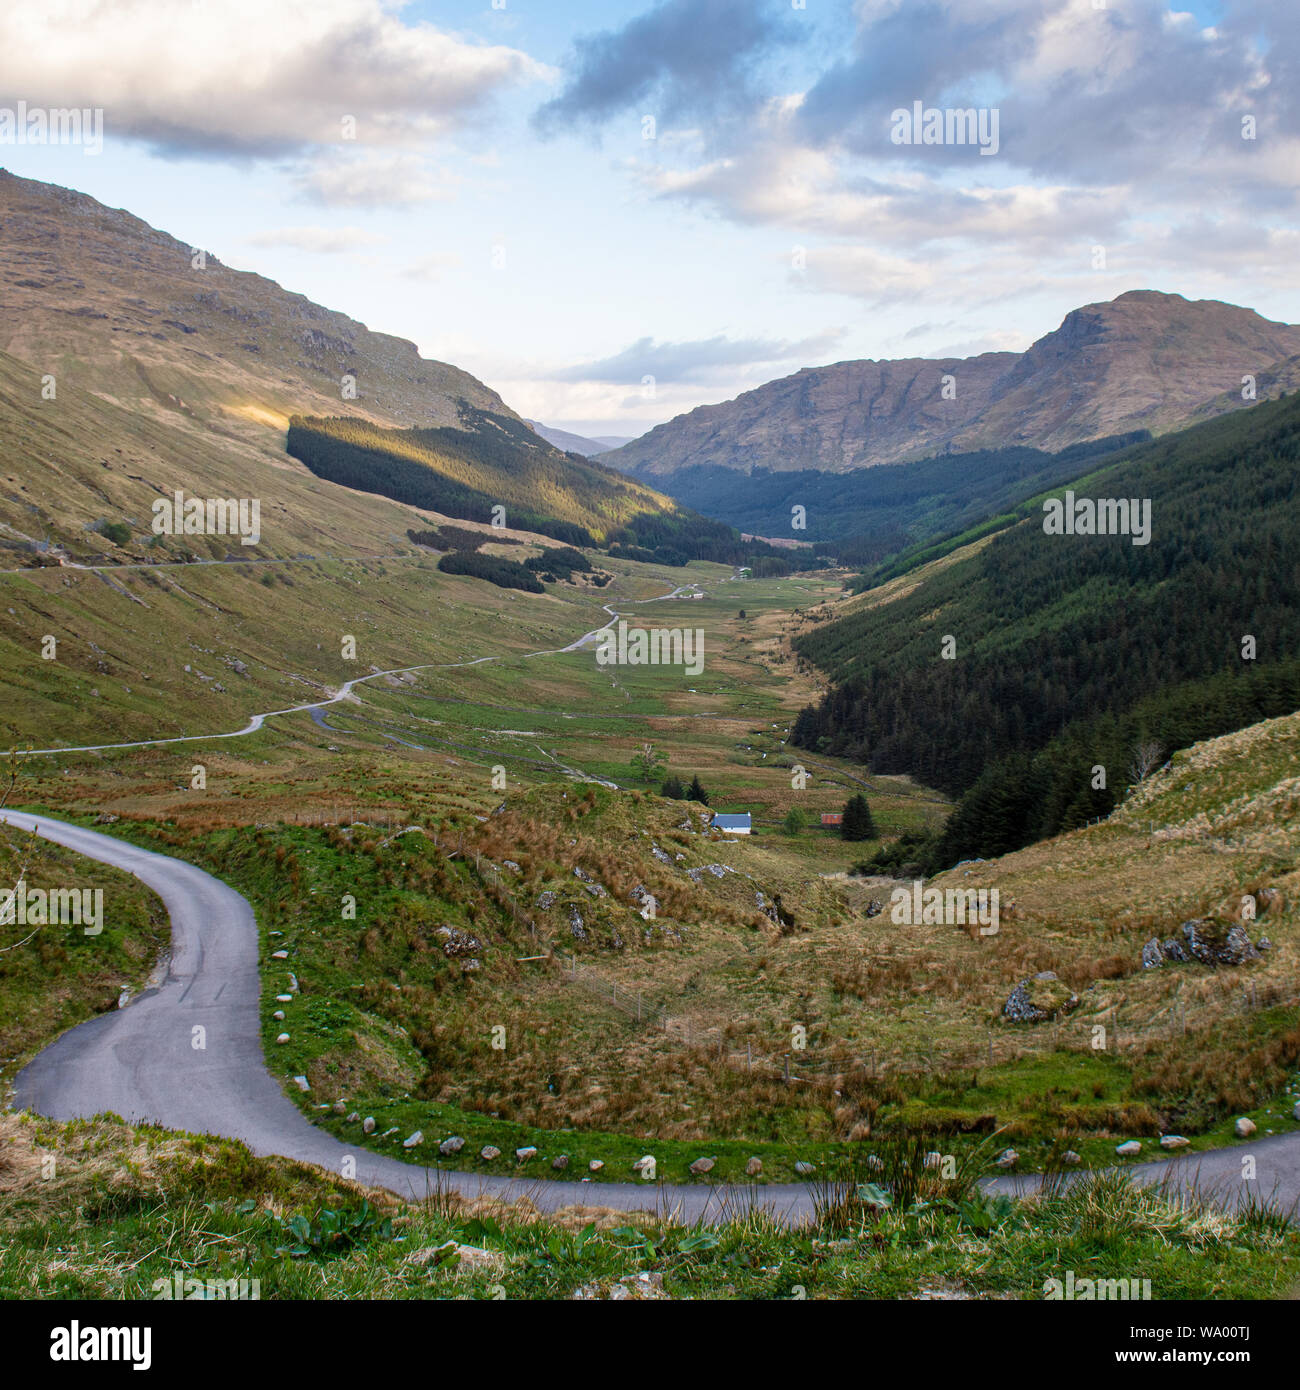 Les routes de montagne de la vallée de Glen clumb Croe au reste et être reconnaissant passer à travers la montagne et les Alpes Arrochar dans les Highlands d'Ecosse. Banque D'Images